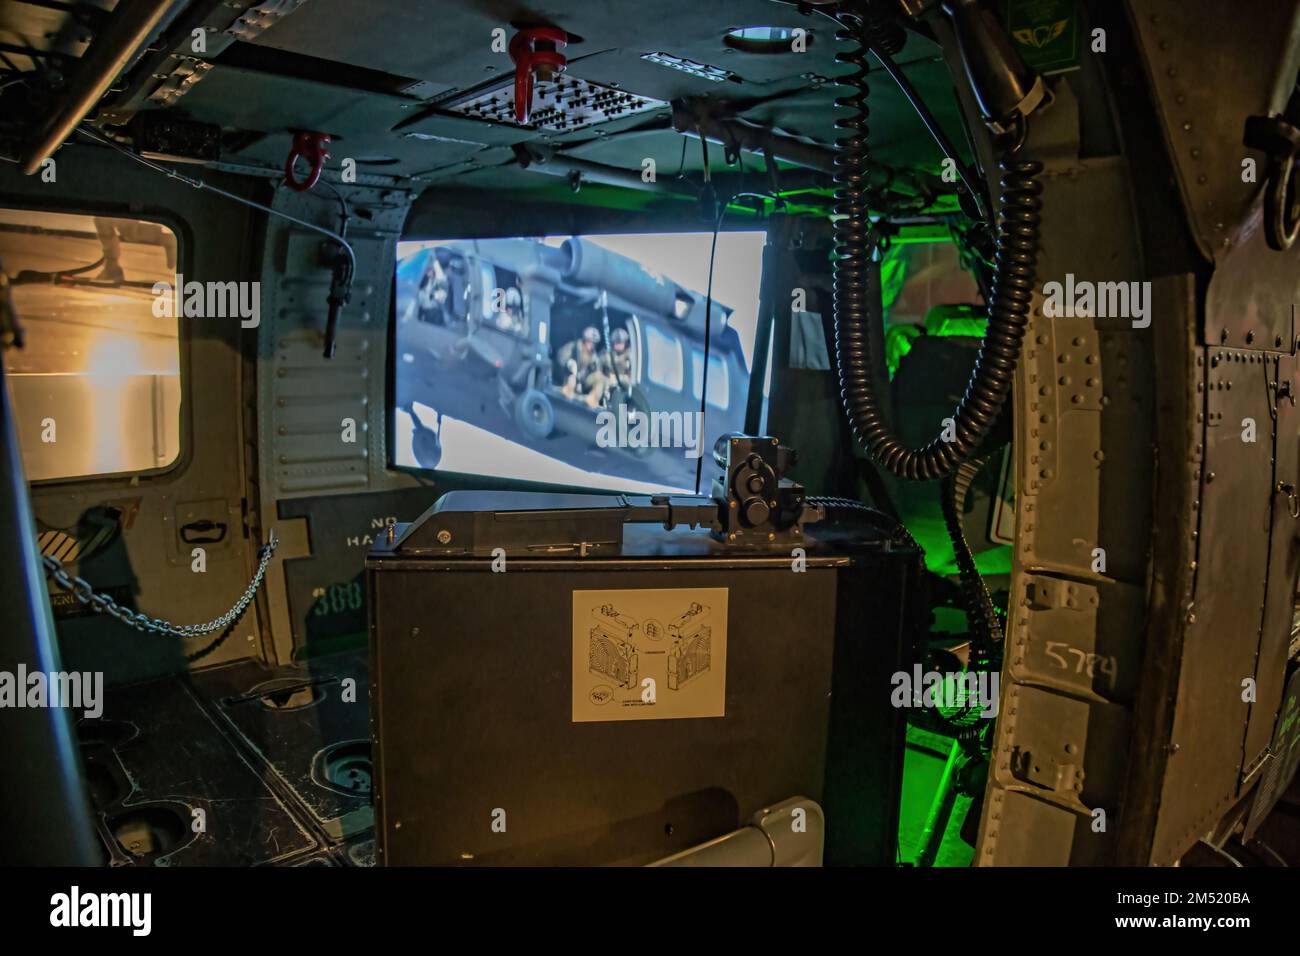 All'interno di un elicottero militare utilizzato nelle operazioni DI FOCHE della Marina nel museo DELLE FOCHE della Marina di Fort Pierce con un video in sottofondo Foto Stock